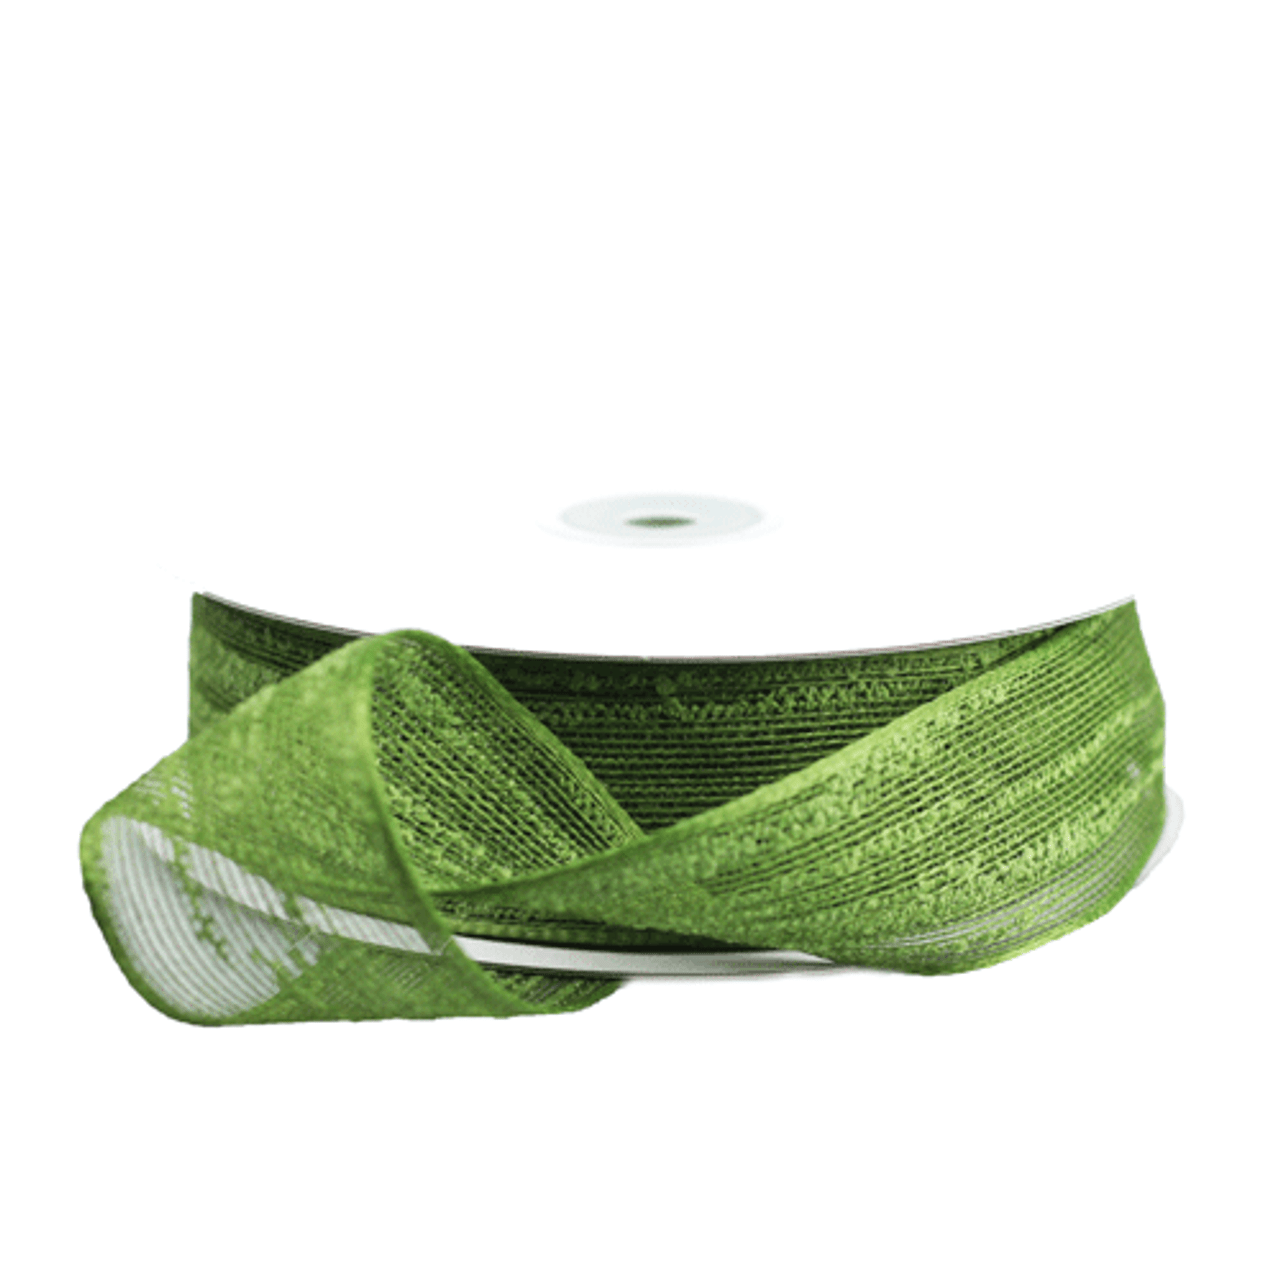 Natural Style Mesh Ribbon 1 1/2" x 25 yards - Green